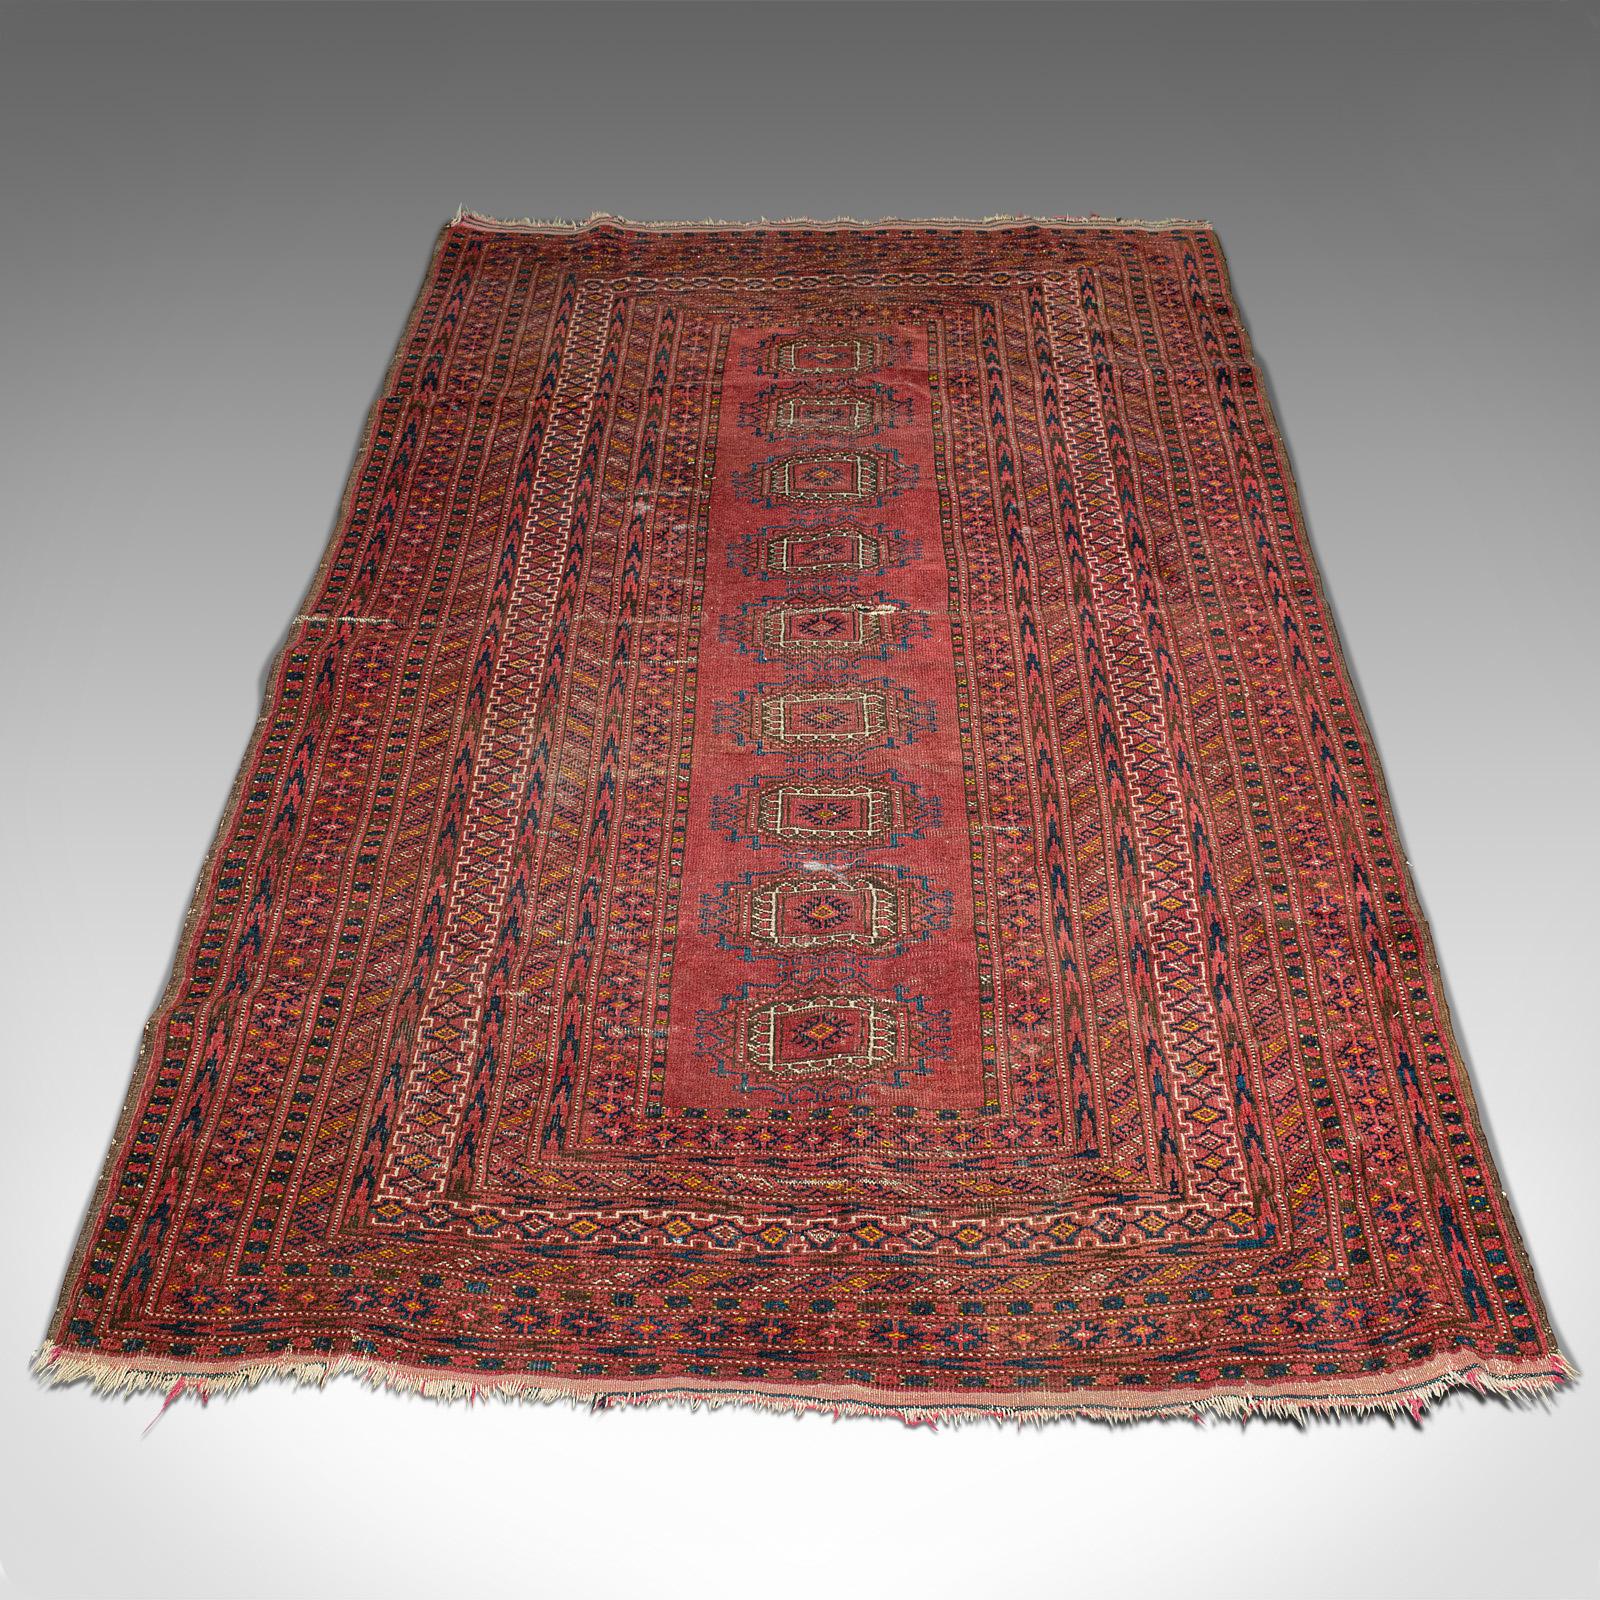 Es handelt sich um einen antiken türkischen Teppich. Der aus dem Nahen Osten gewebte dekorative Teppich stammt aus dem frühen 20. Jahrhundert, um 1920.

Antiker, erhabener Teppich mit Musterdetails und enthusiastischen Details
Die Dozar-Größe